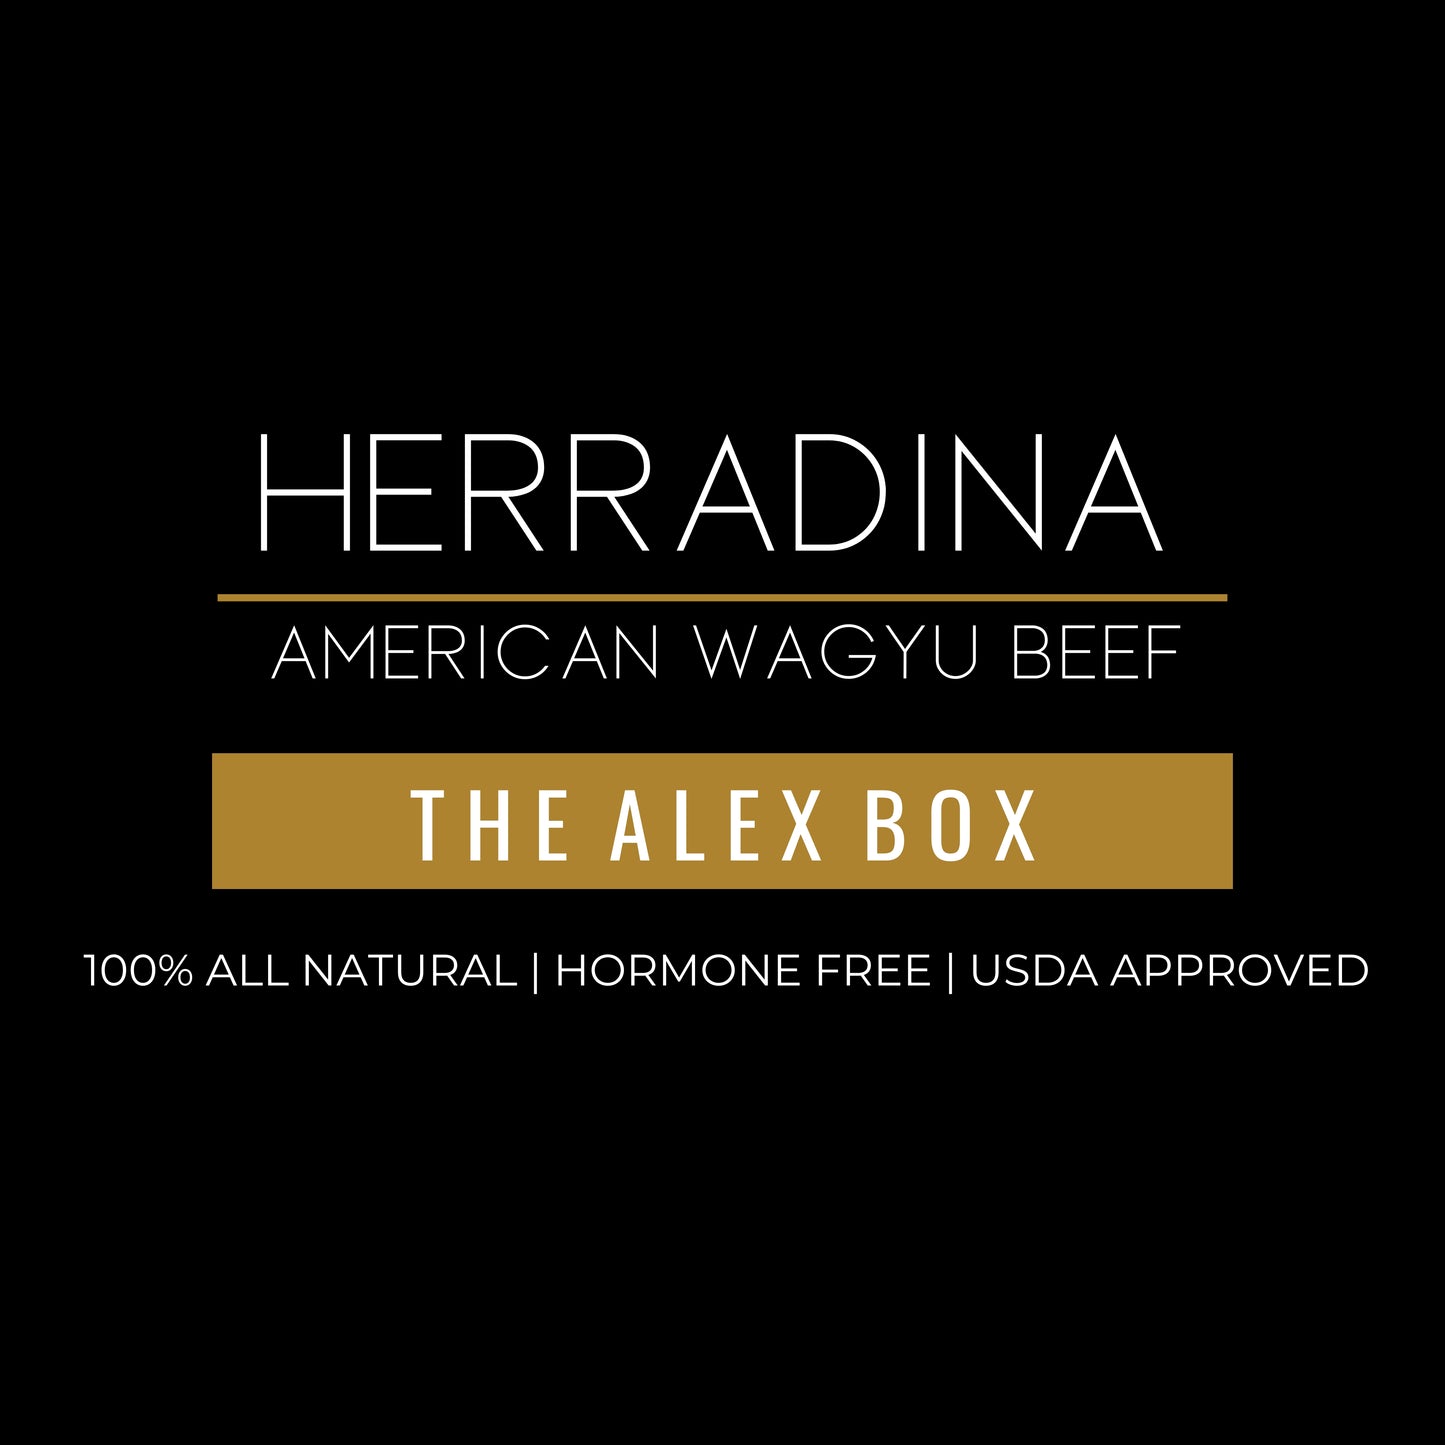 THE ALEX BOX